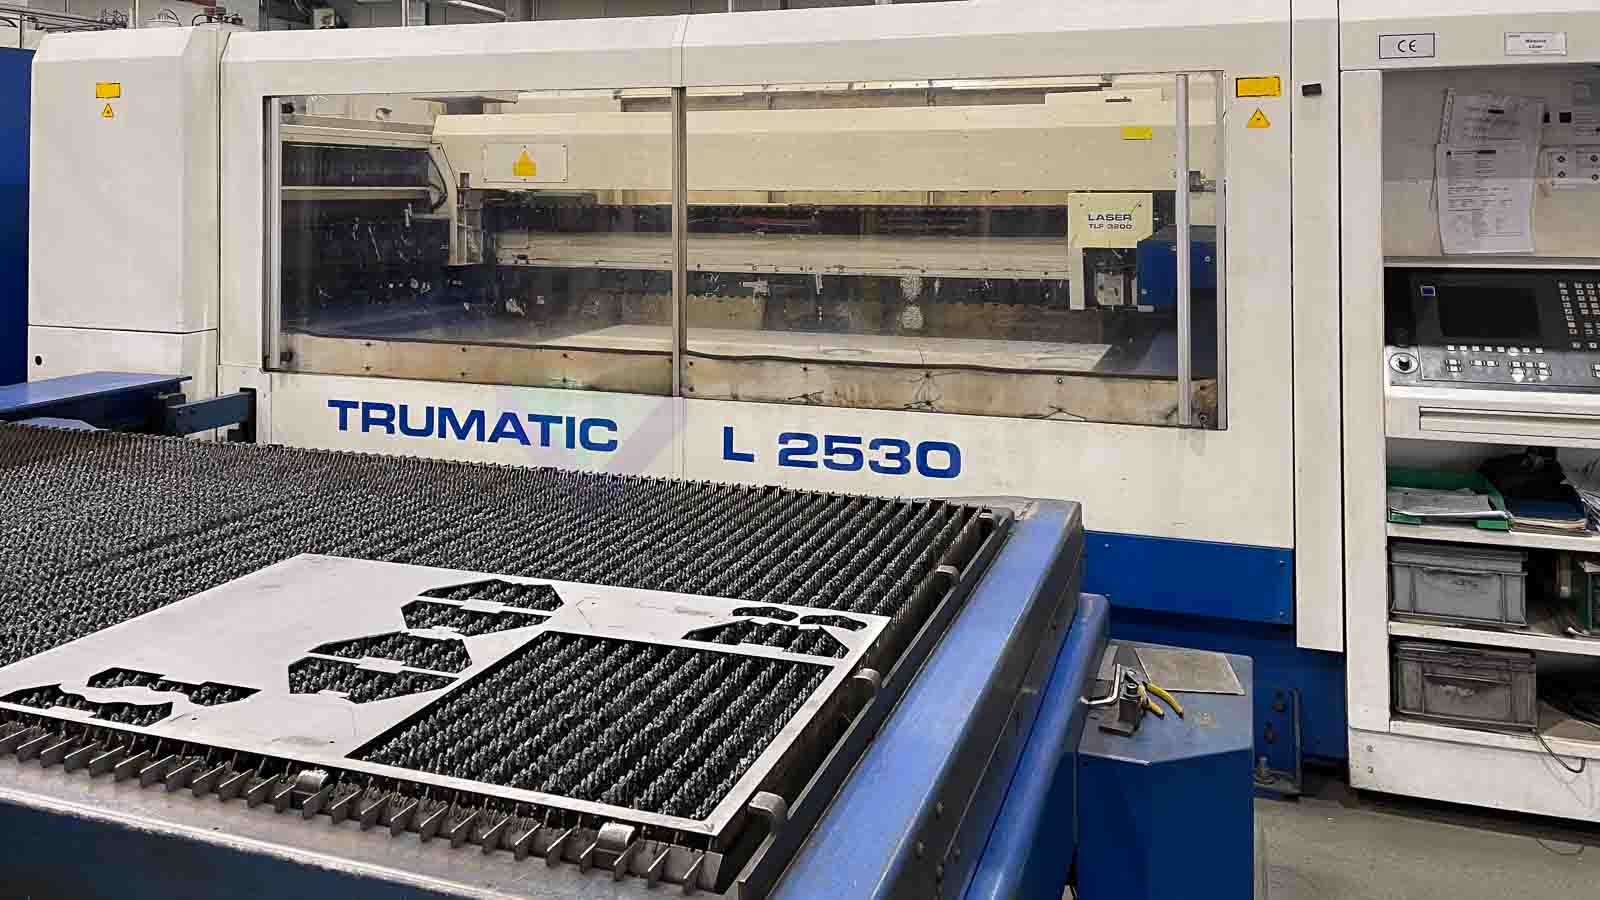 Maschine: TRUMPF TRUMATIC L2530 Laser cutting machine (CO2)